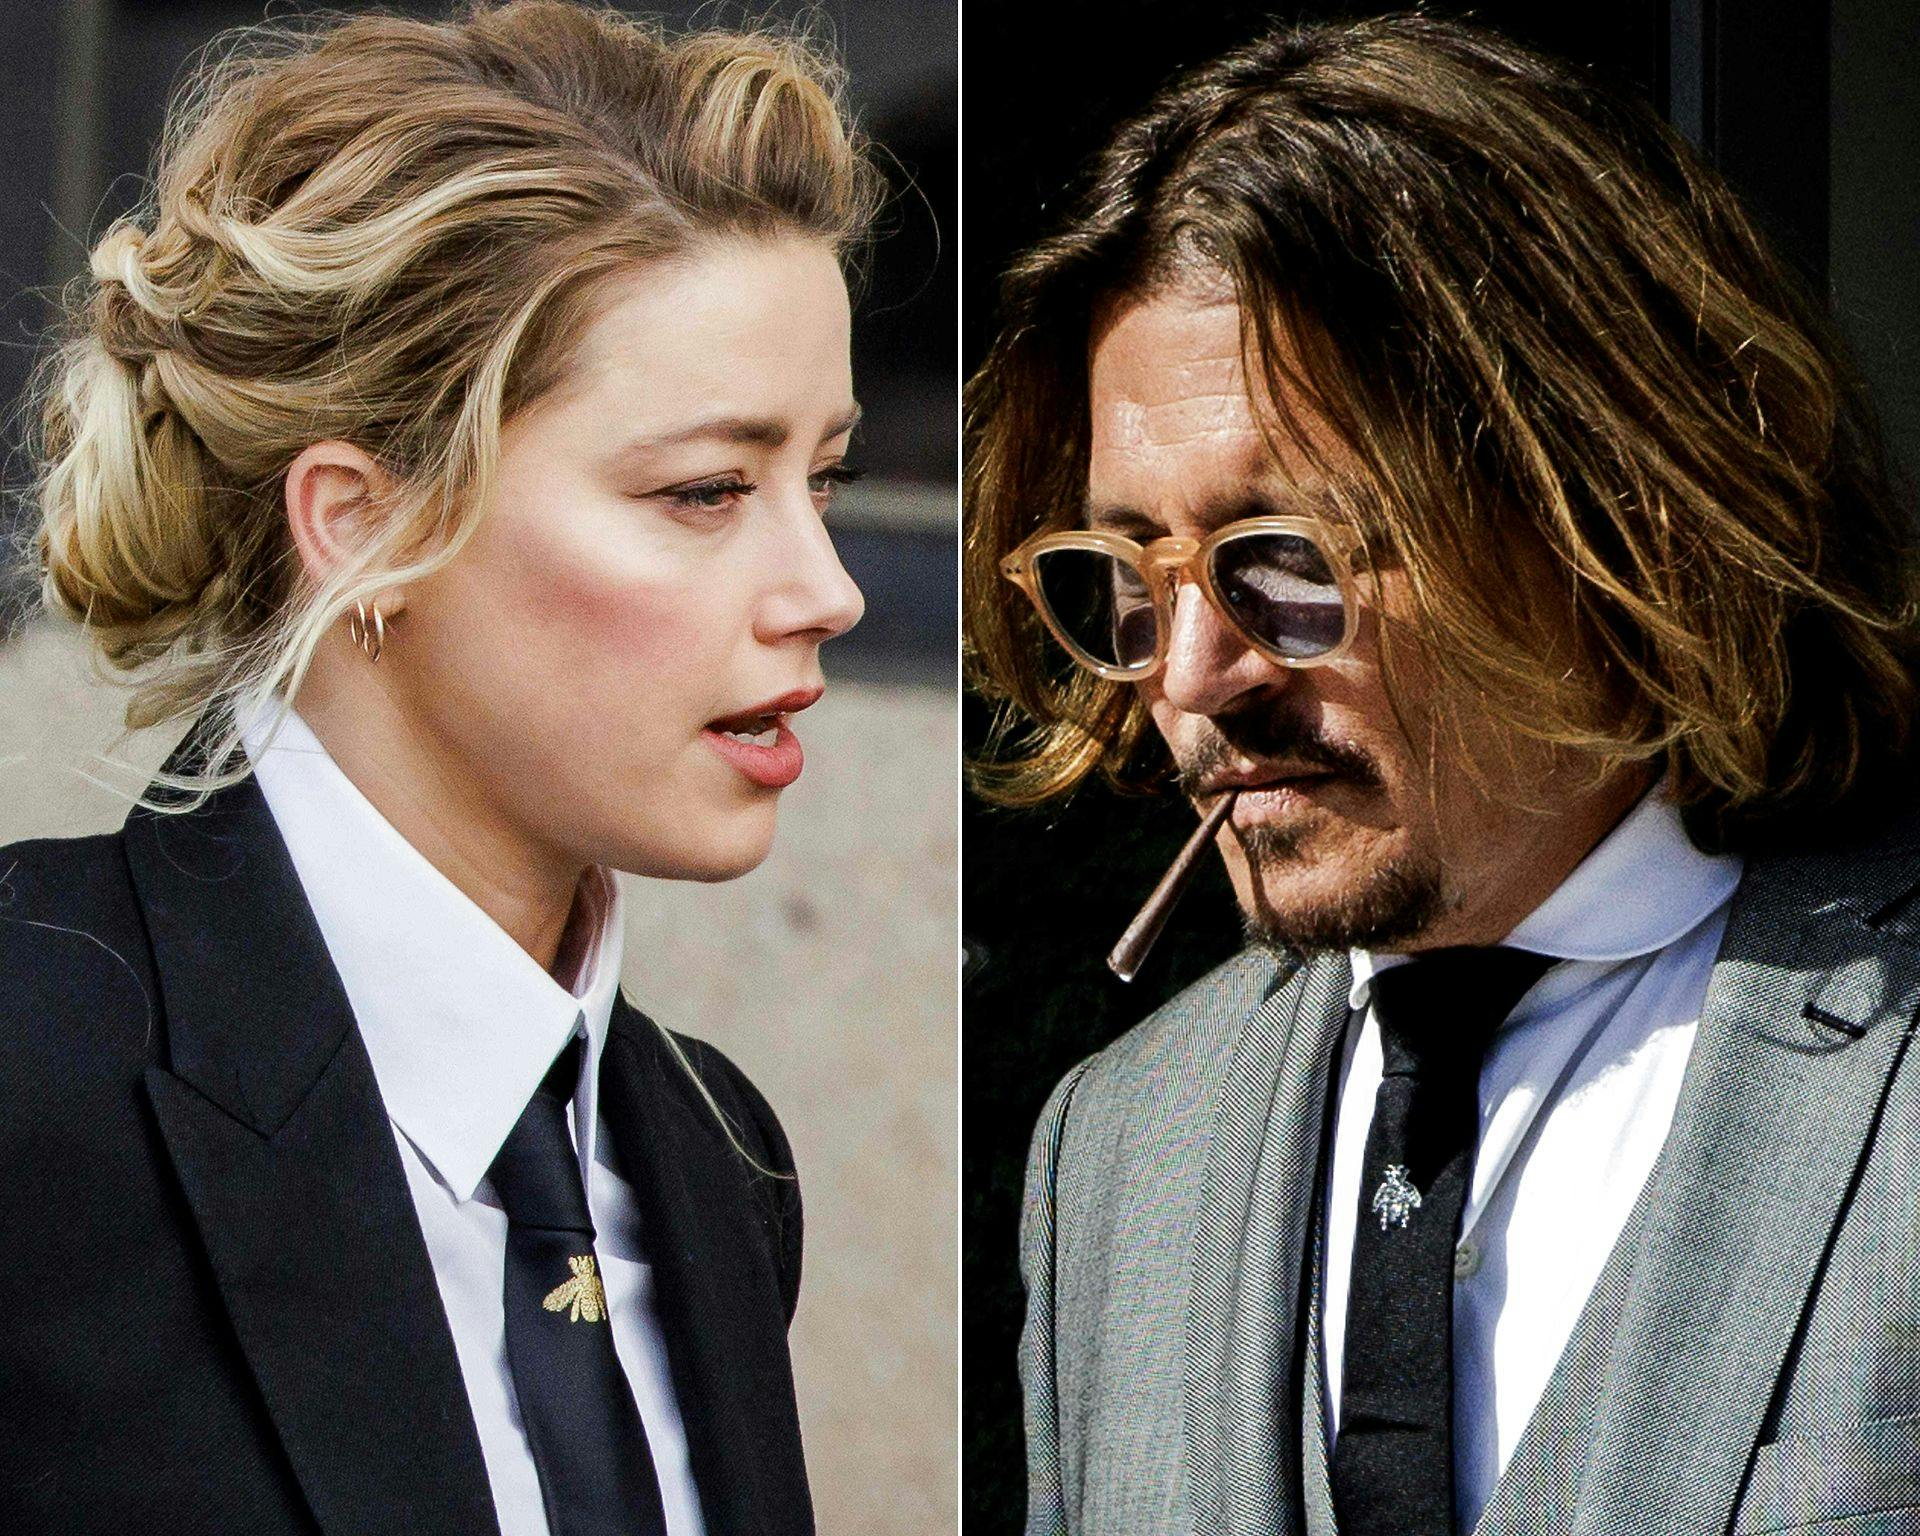 Amber Heard blev dømt til at betale 10,35 millioner dollars i erstatning til Johnny Depp i forbindelse med retssagen, mens han skal betale hende to millioner.
